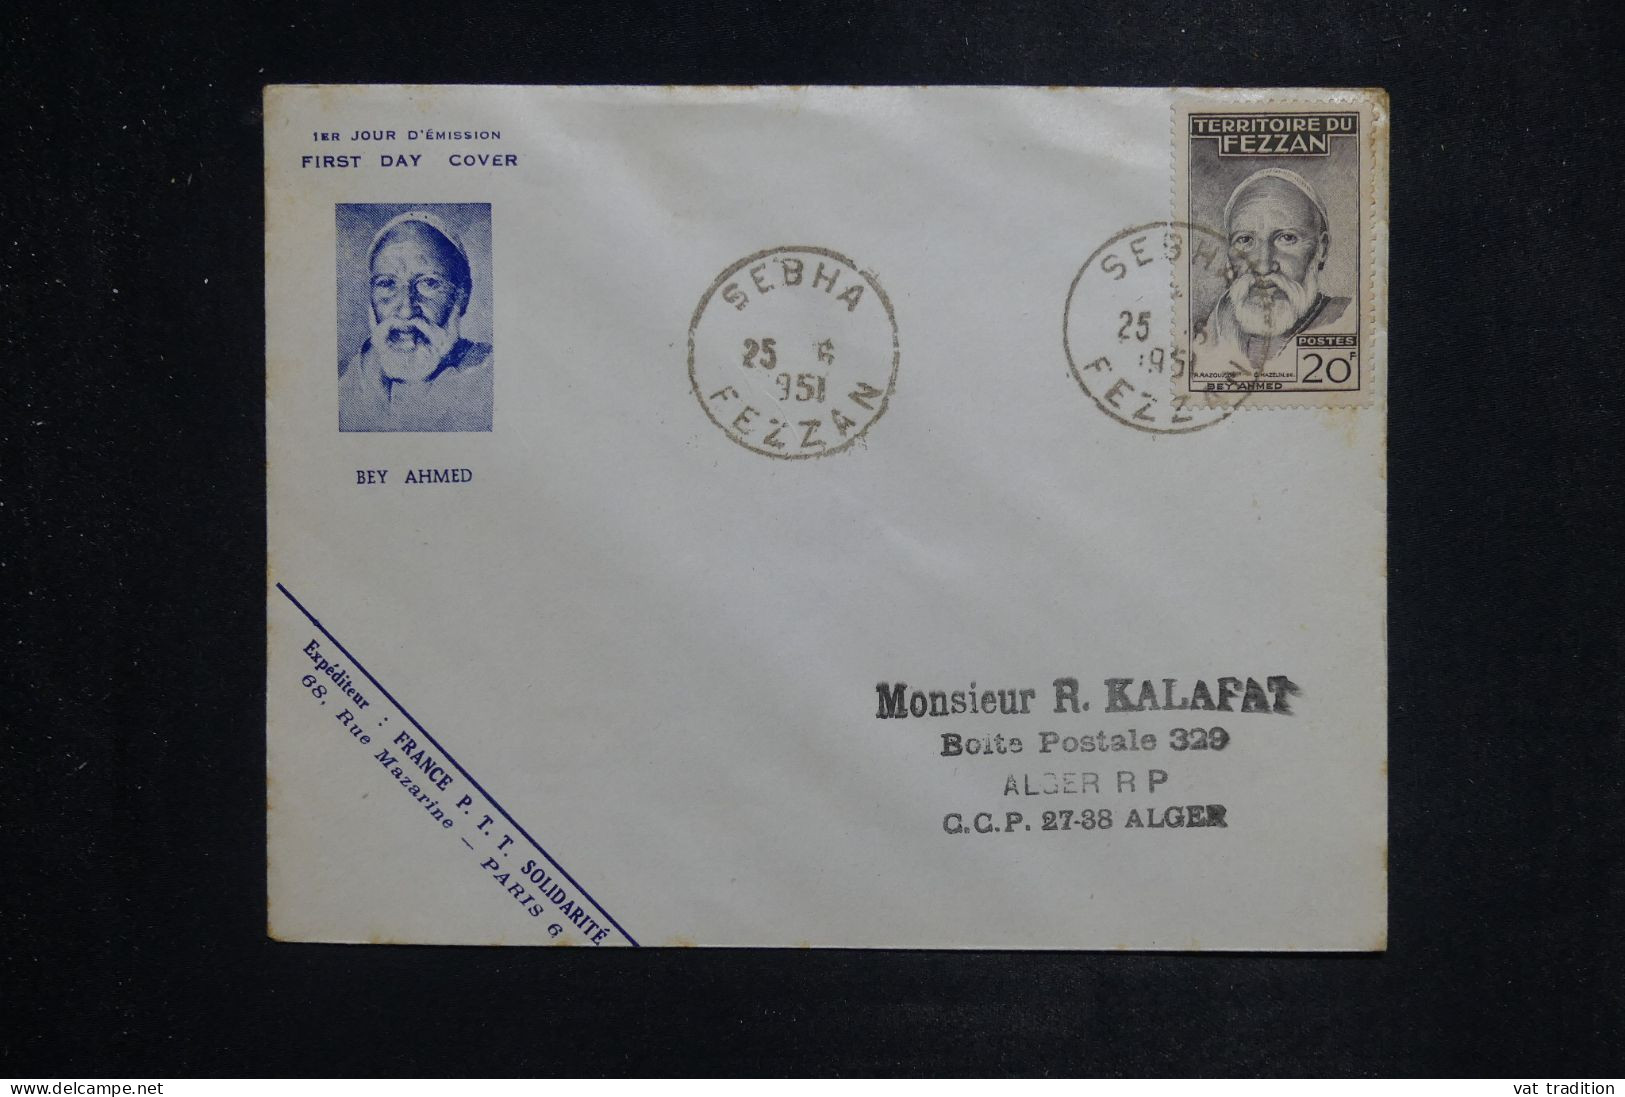 FEZZAN  - Enveloppe FDC En 1951 - Beyahmed - L 151104 - Brieven En Documenten